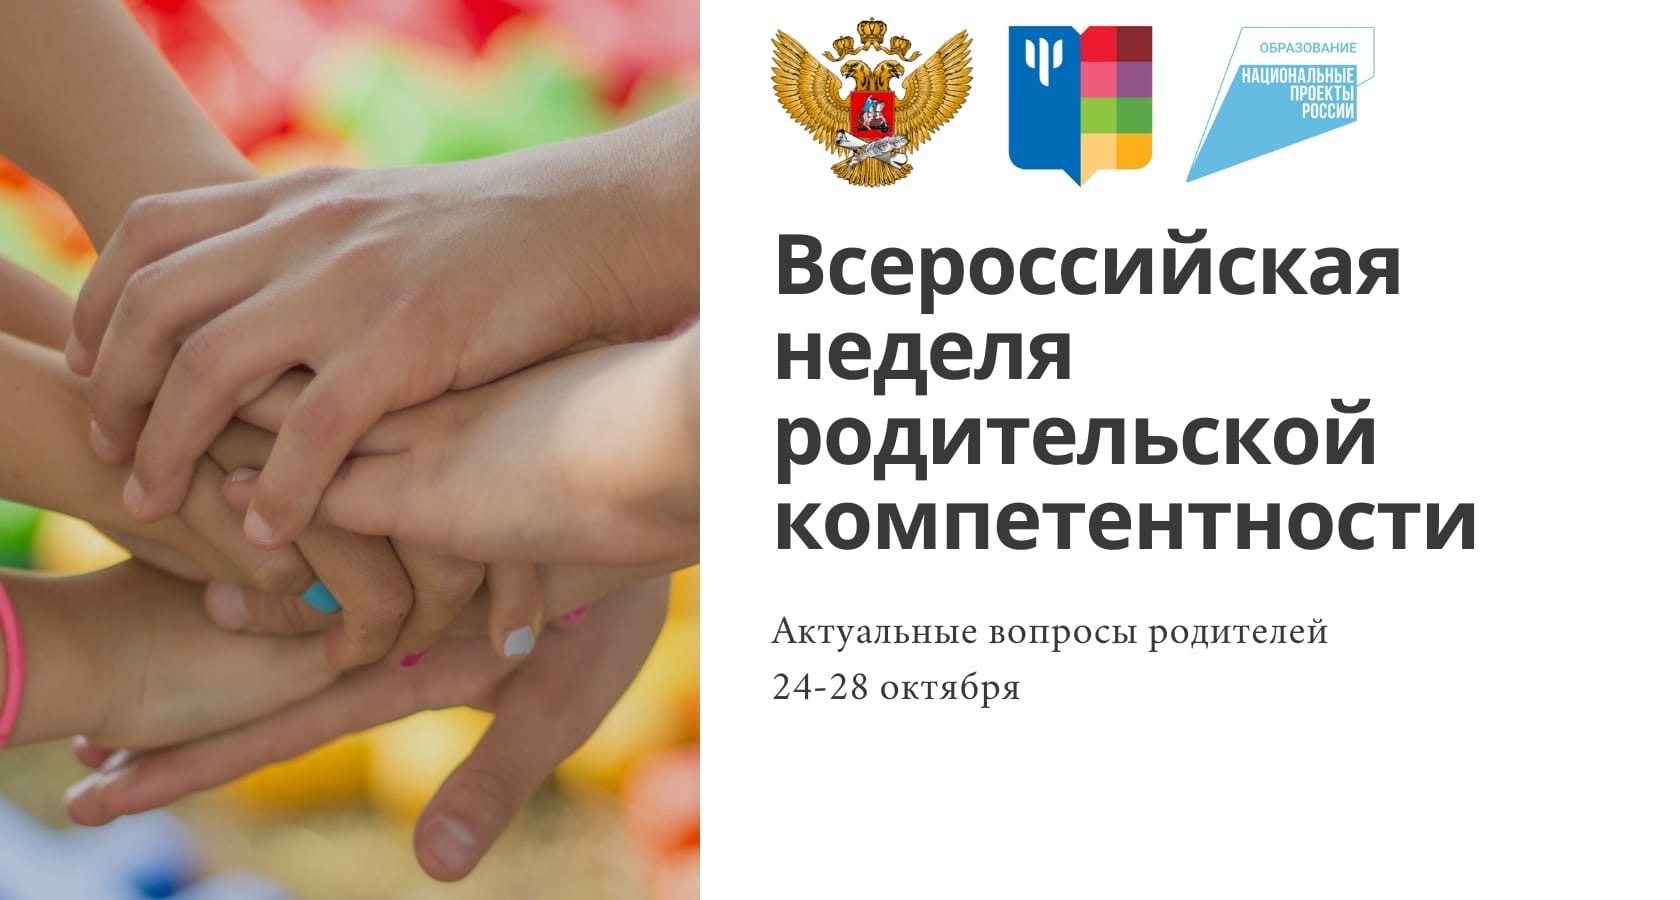 C 24 по 28 октября пройдет Всероссийская неделя родительской компетентности.